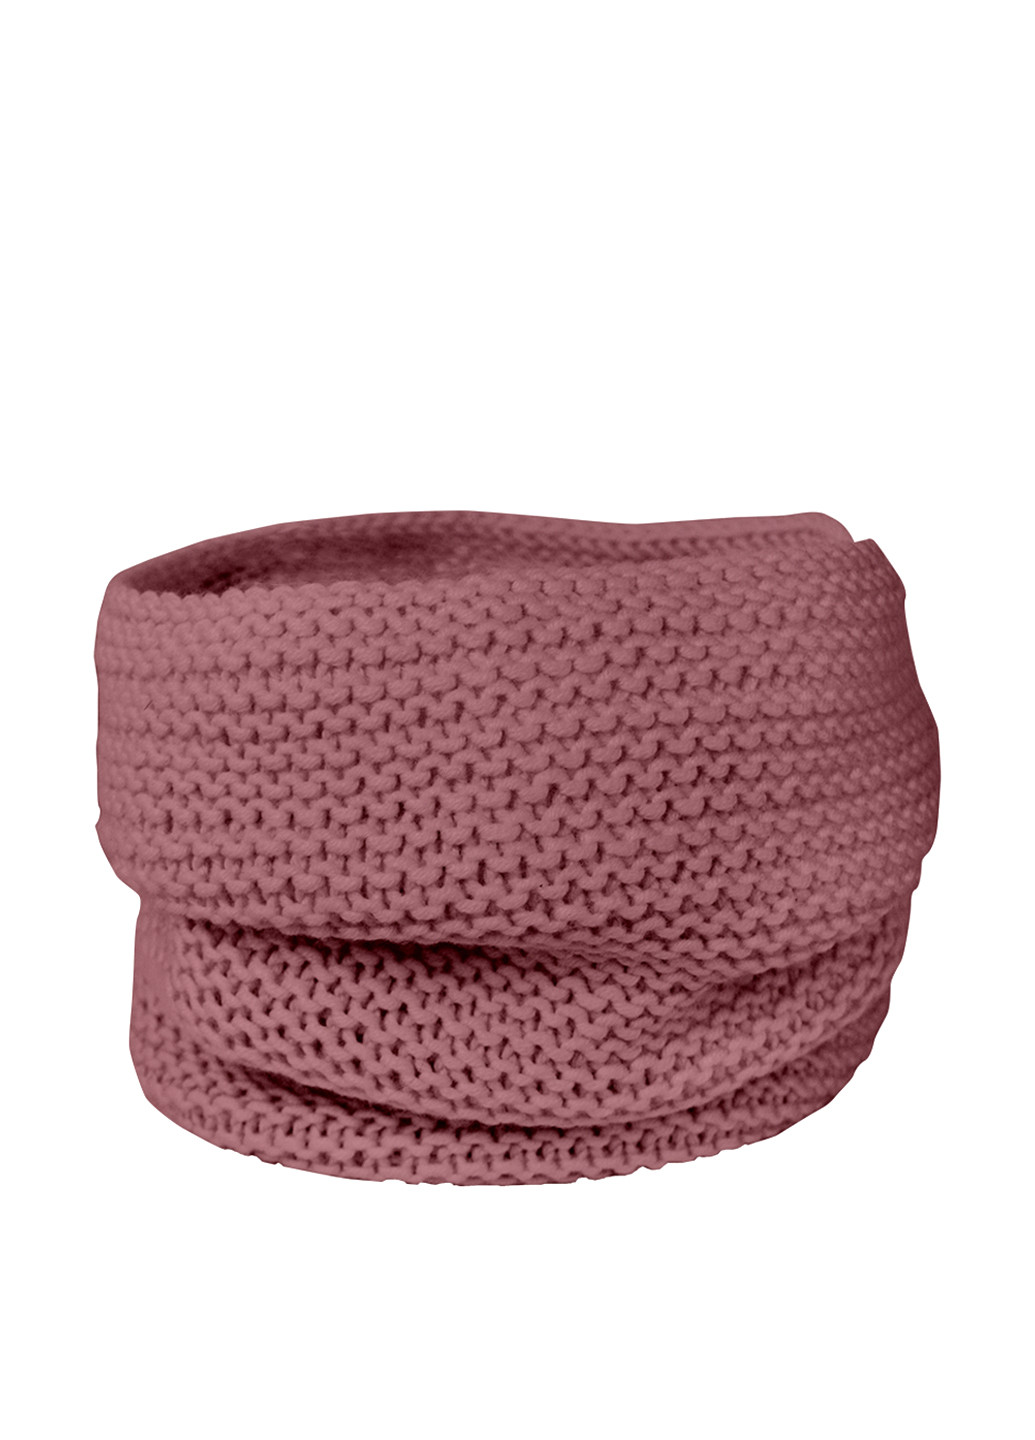 Бордовый зимний комплект (шапка, шарф-снуд) Anmerino